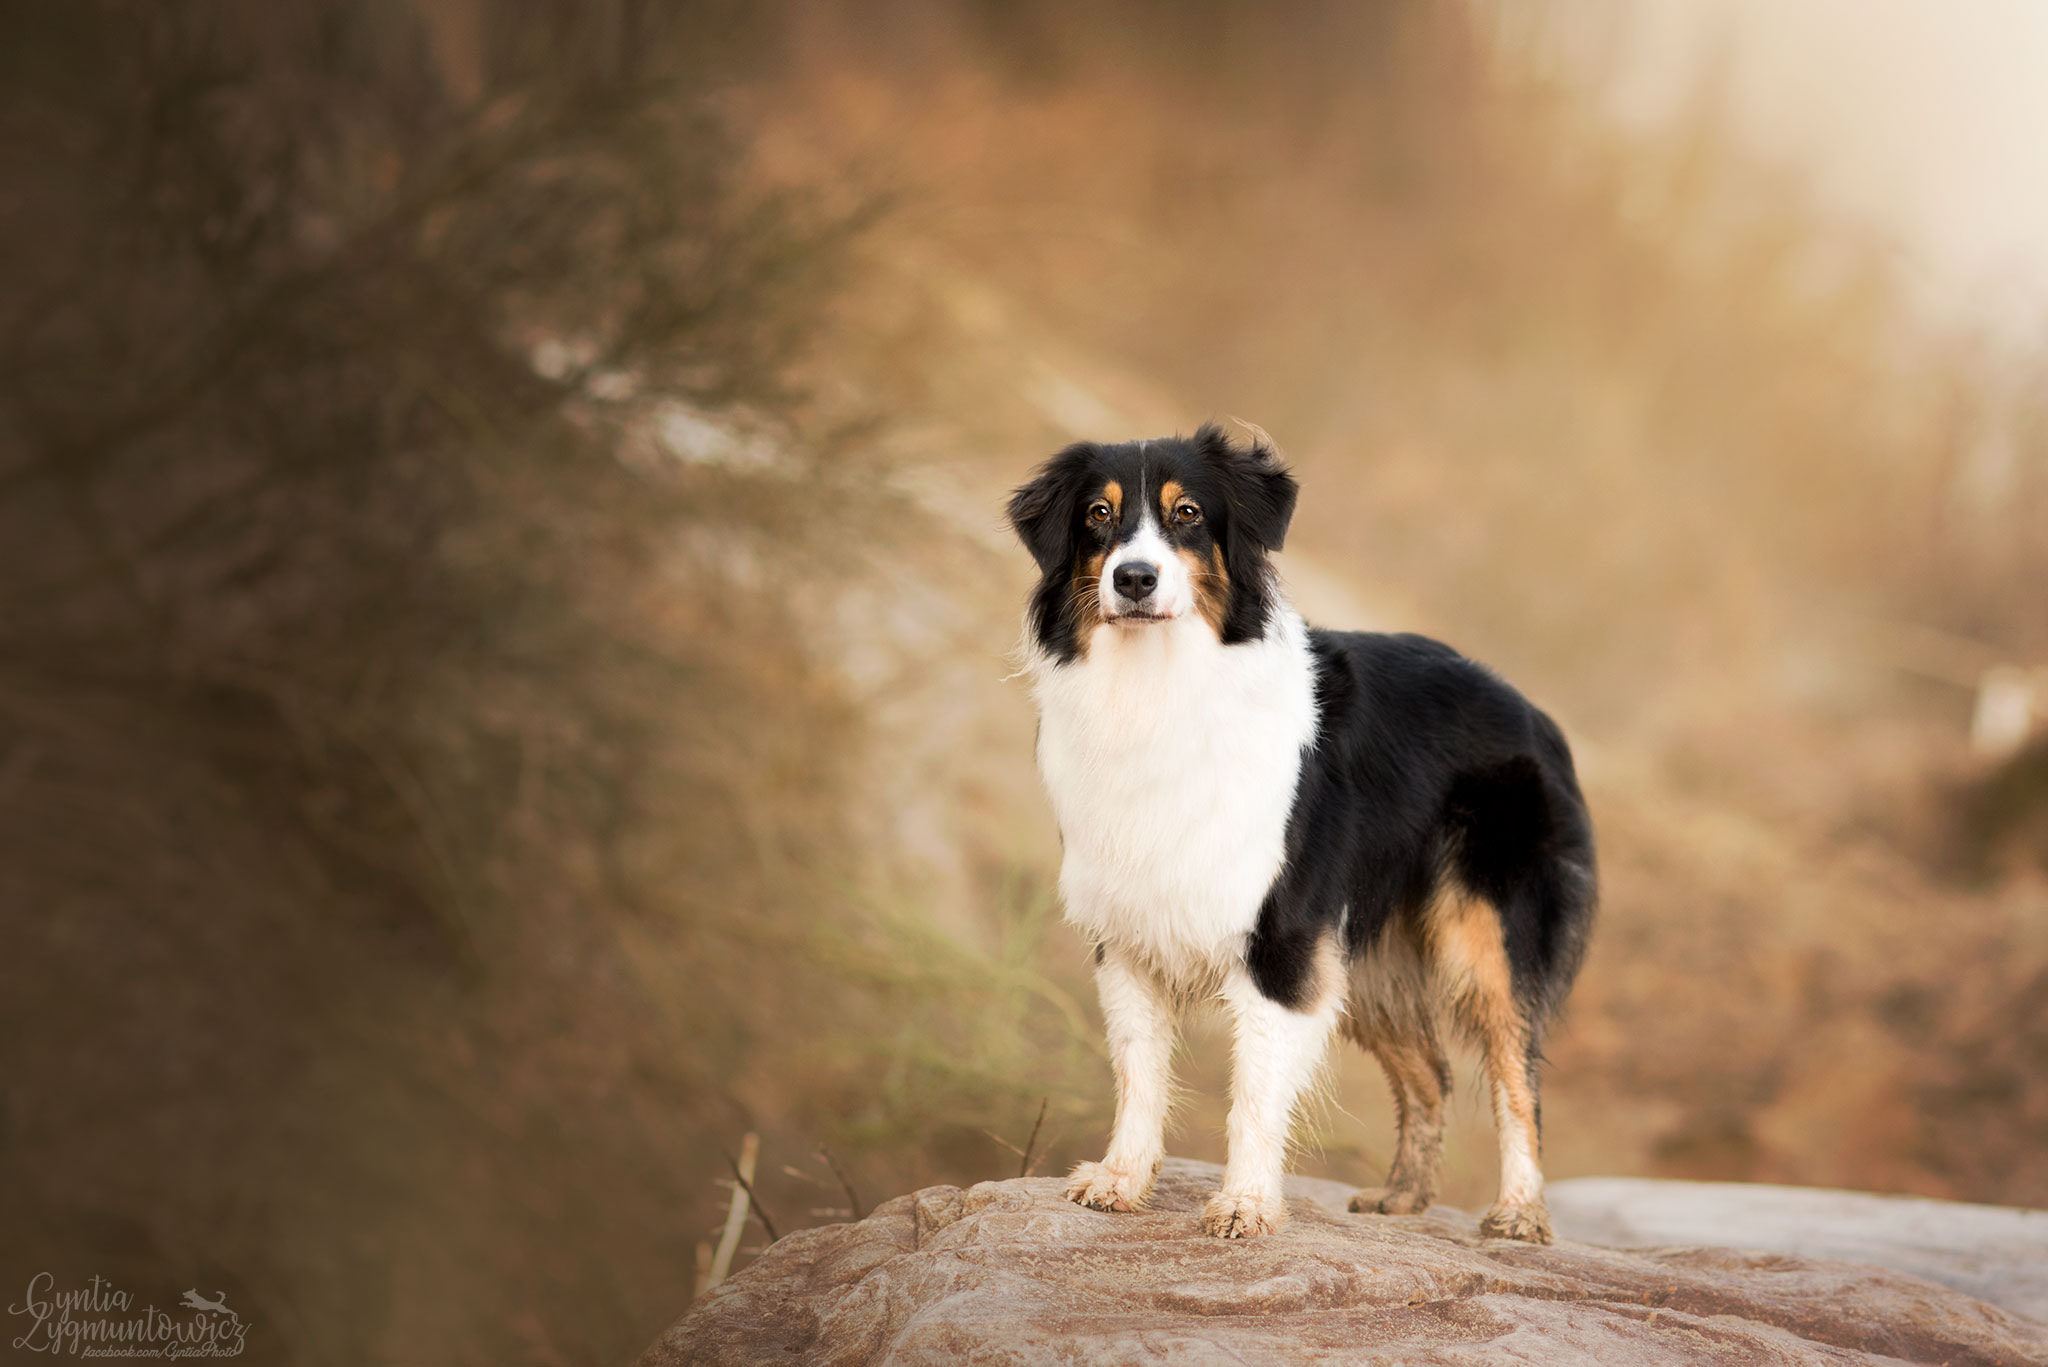 Download mobile wallpaper Dogs, Animal, Australian Shepherd for free.